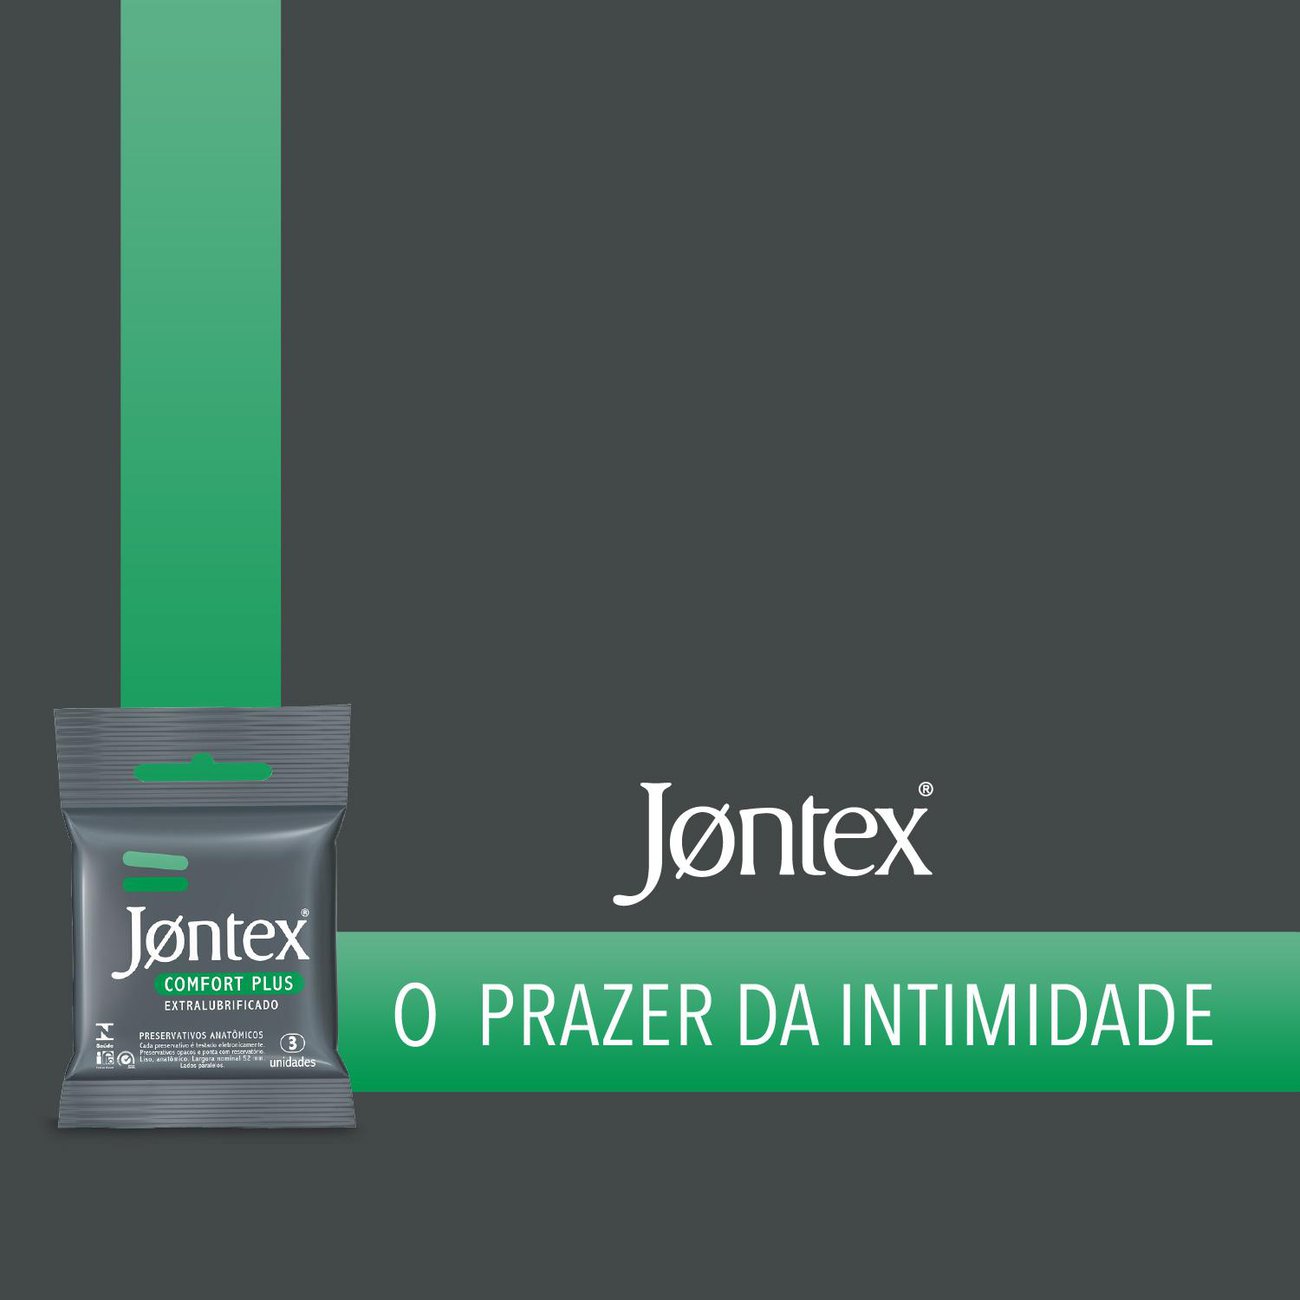 Preservativo Camisinha Jontex Extra Lubrificado - 3 Unidades